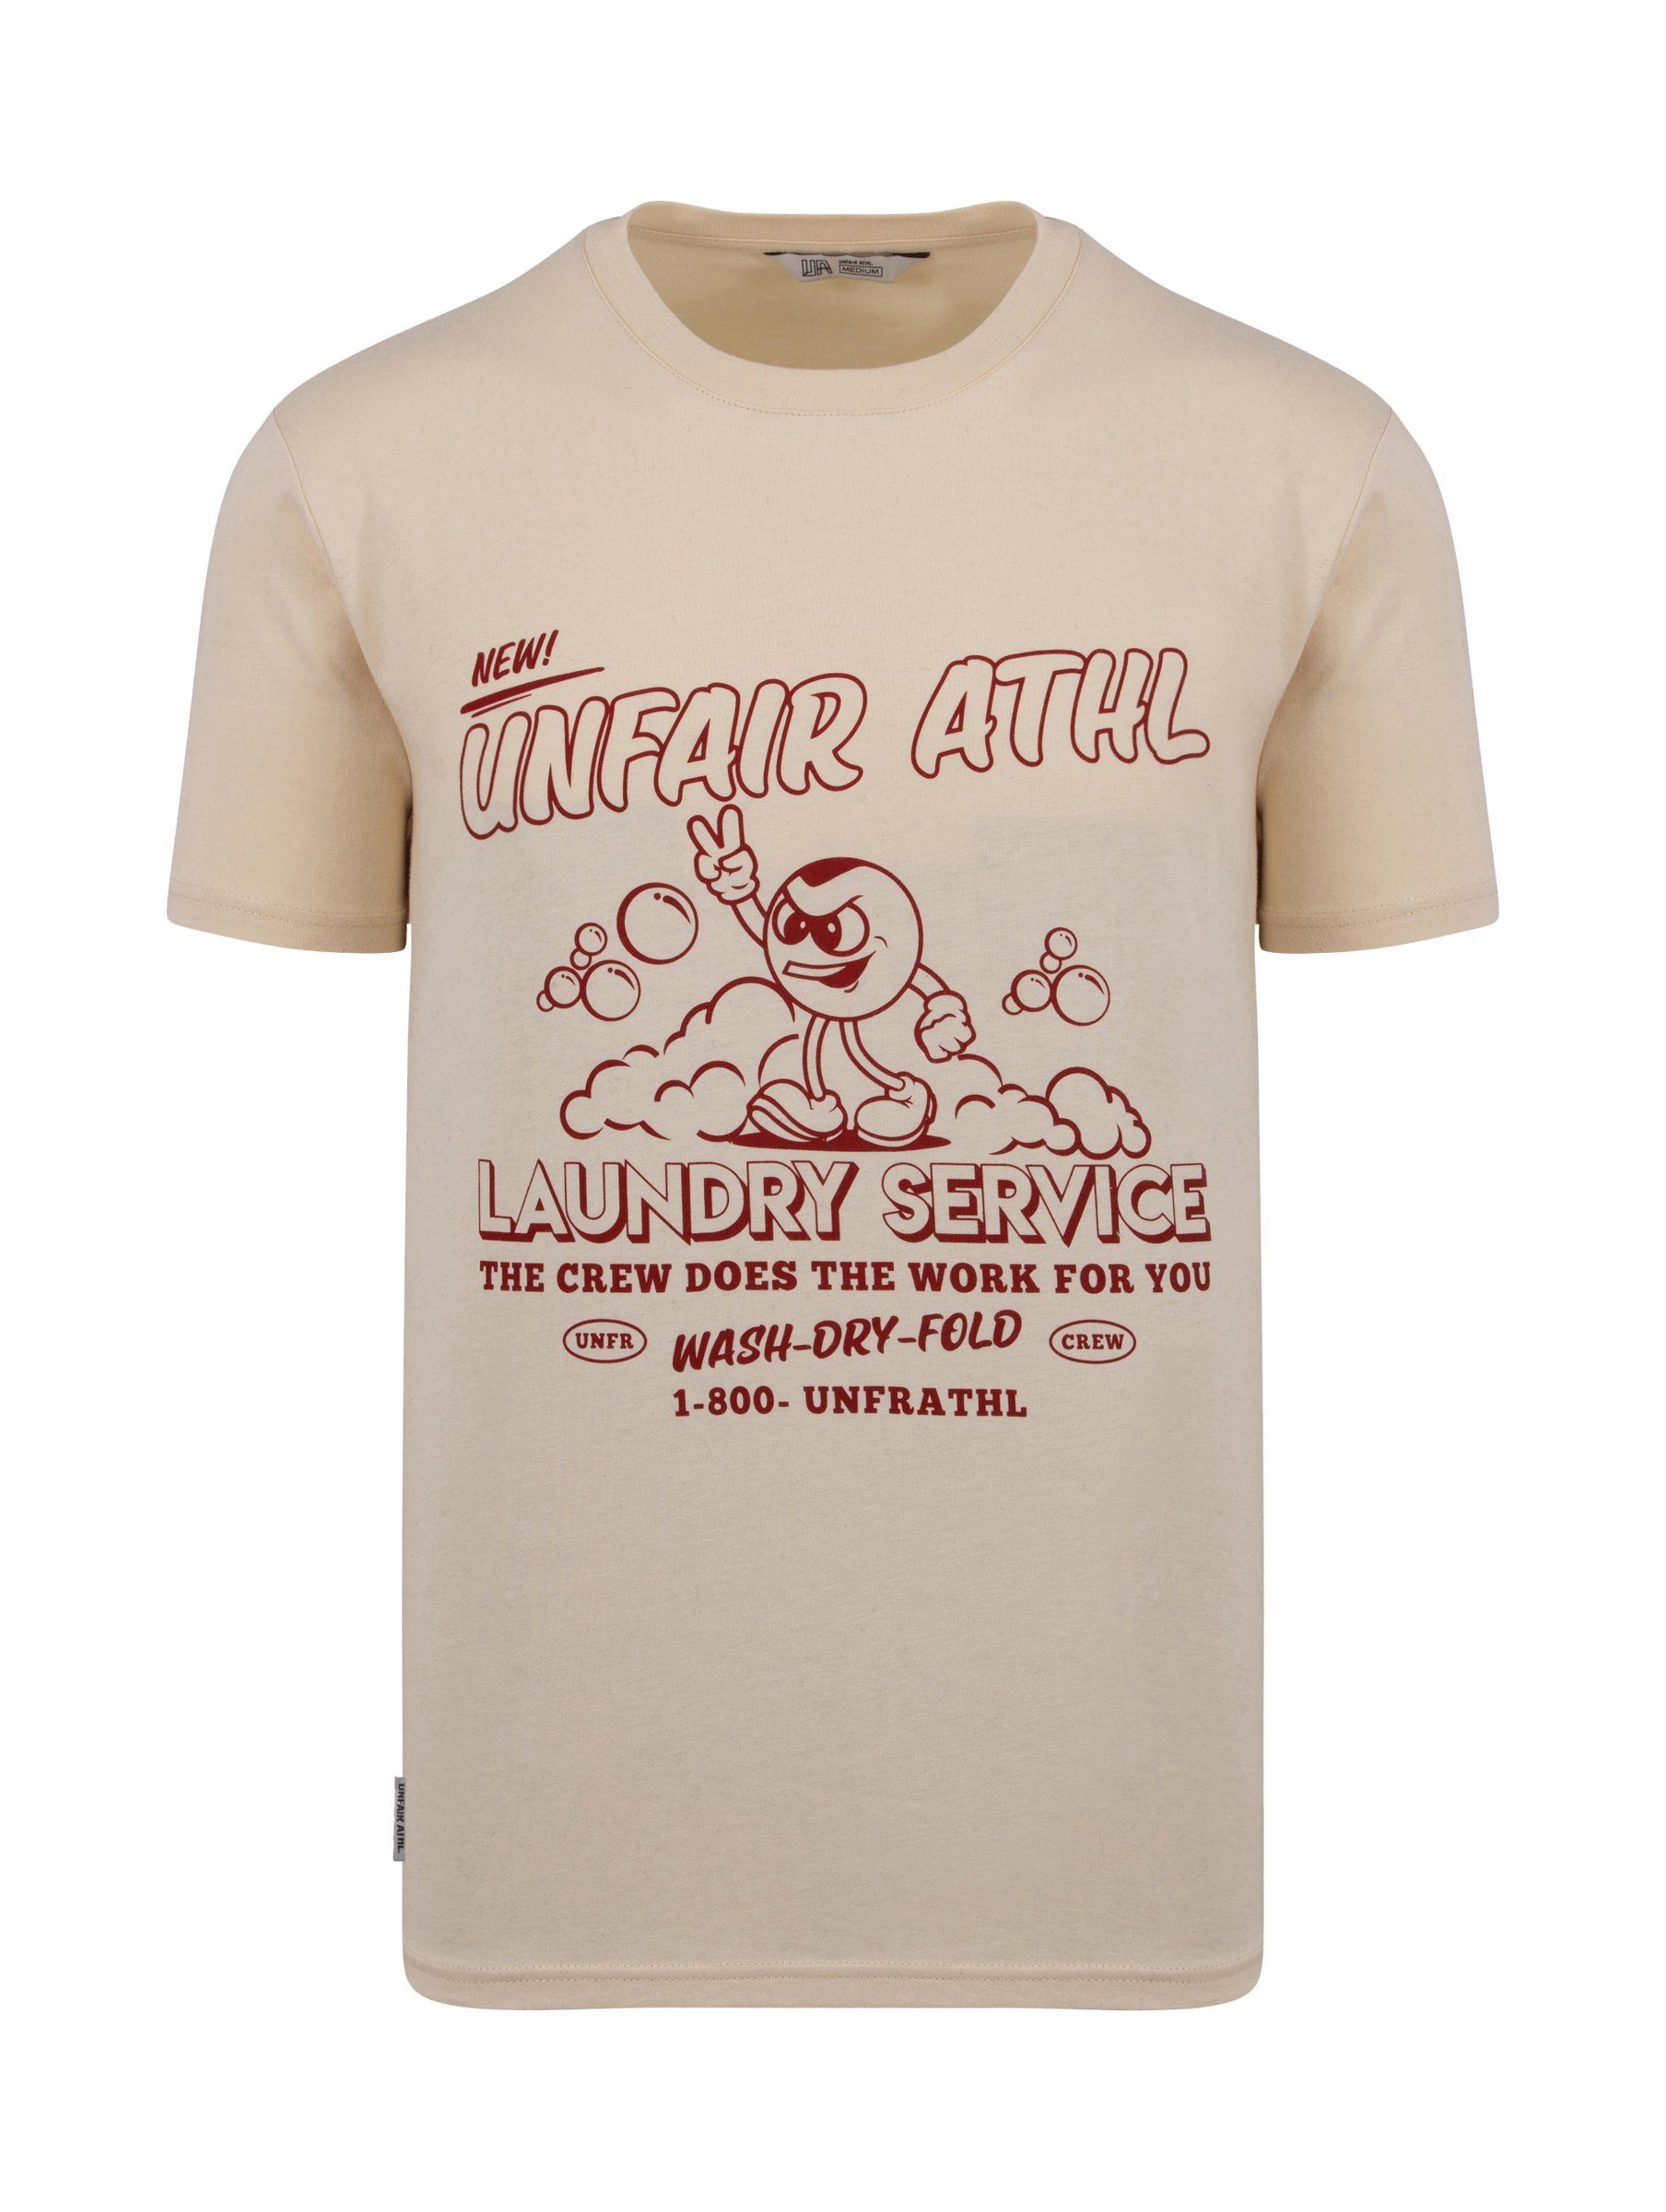 Unfair Athletics T-Shirt Adult Athletics Herren T-Shirt Unfair Service Laundry